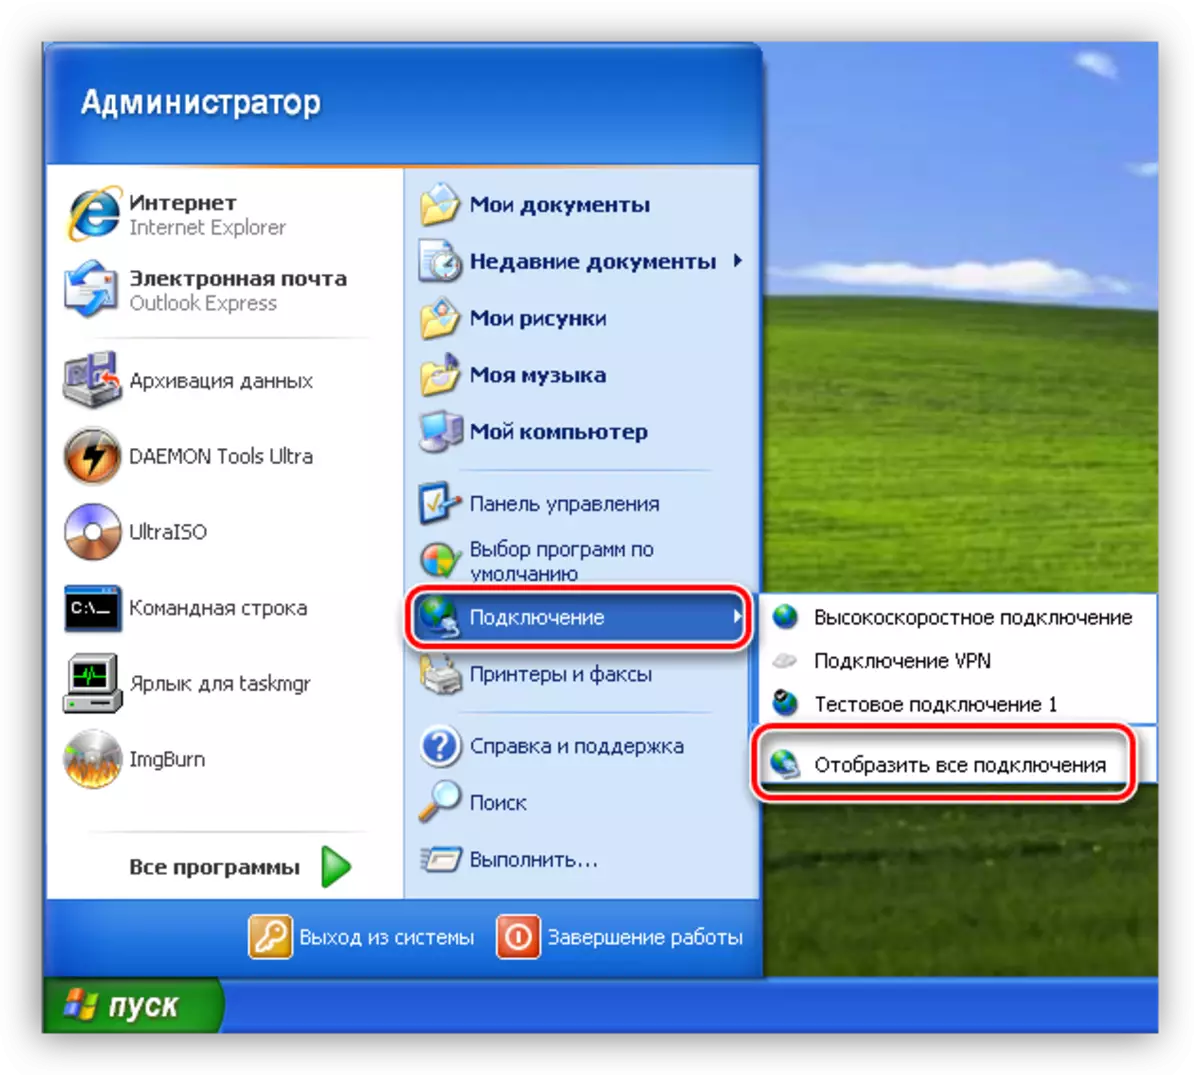 Windows XP లో ప్రారంభ మెను నుండి నెట్వర్క్ కనెక్షన్ల జాబితాకు వెళ్లండి